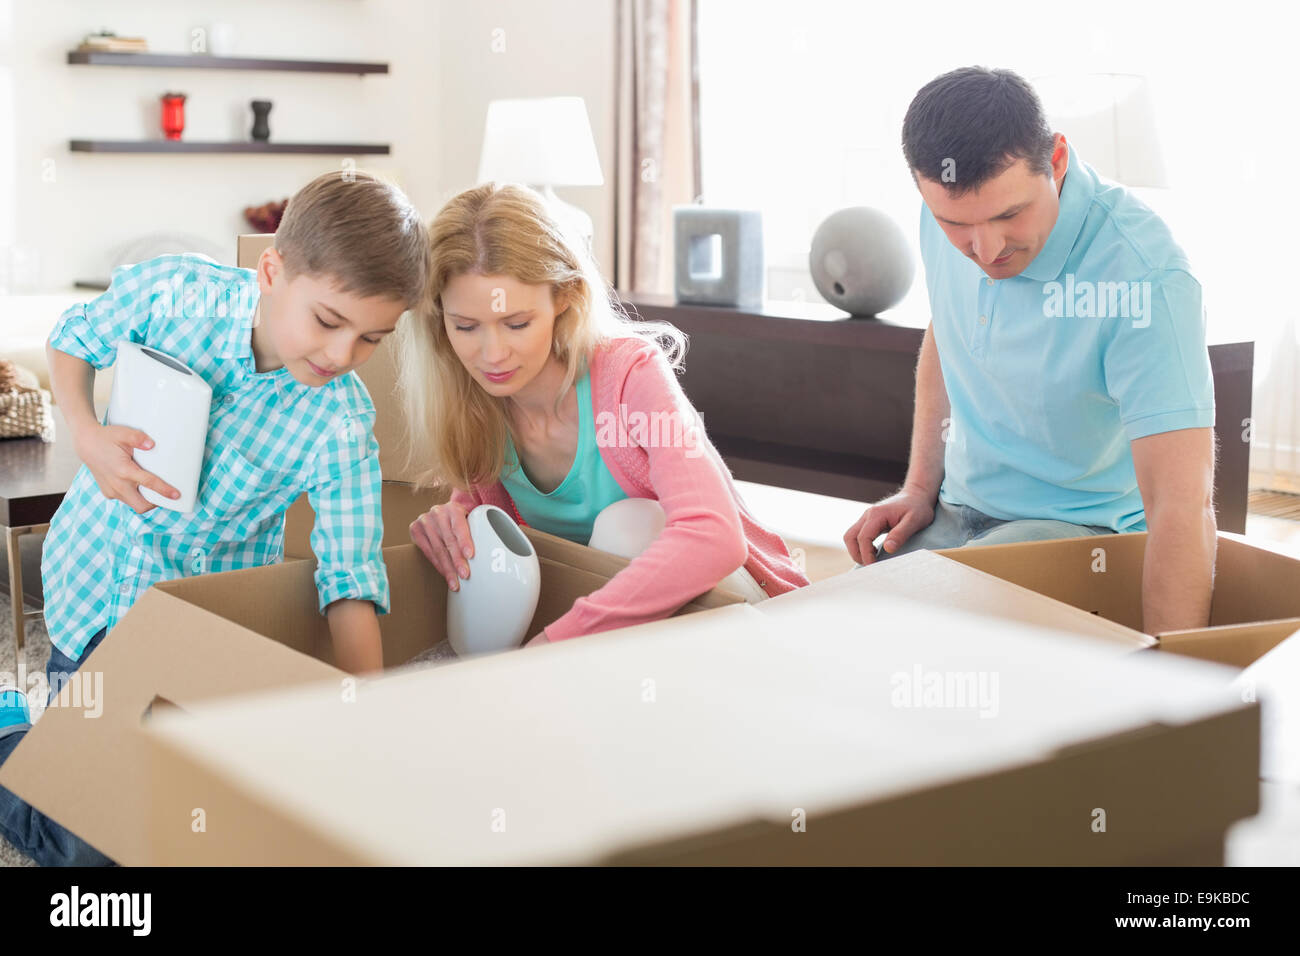 Disimballaggio della famiglia di scatole di cartone in casa nuova Foto Stock